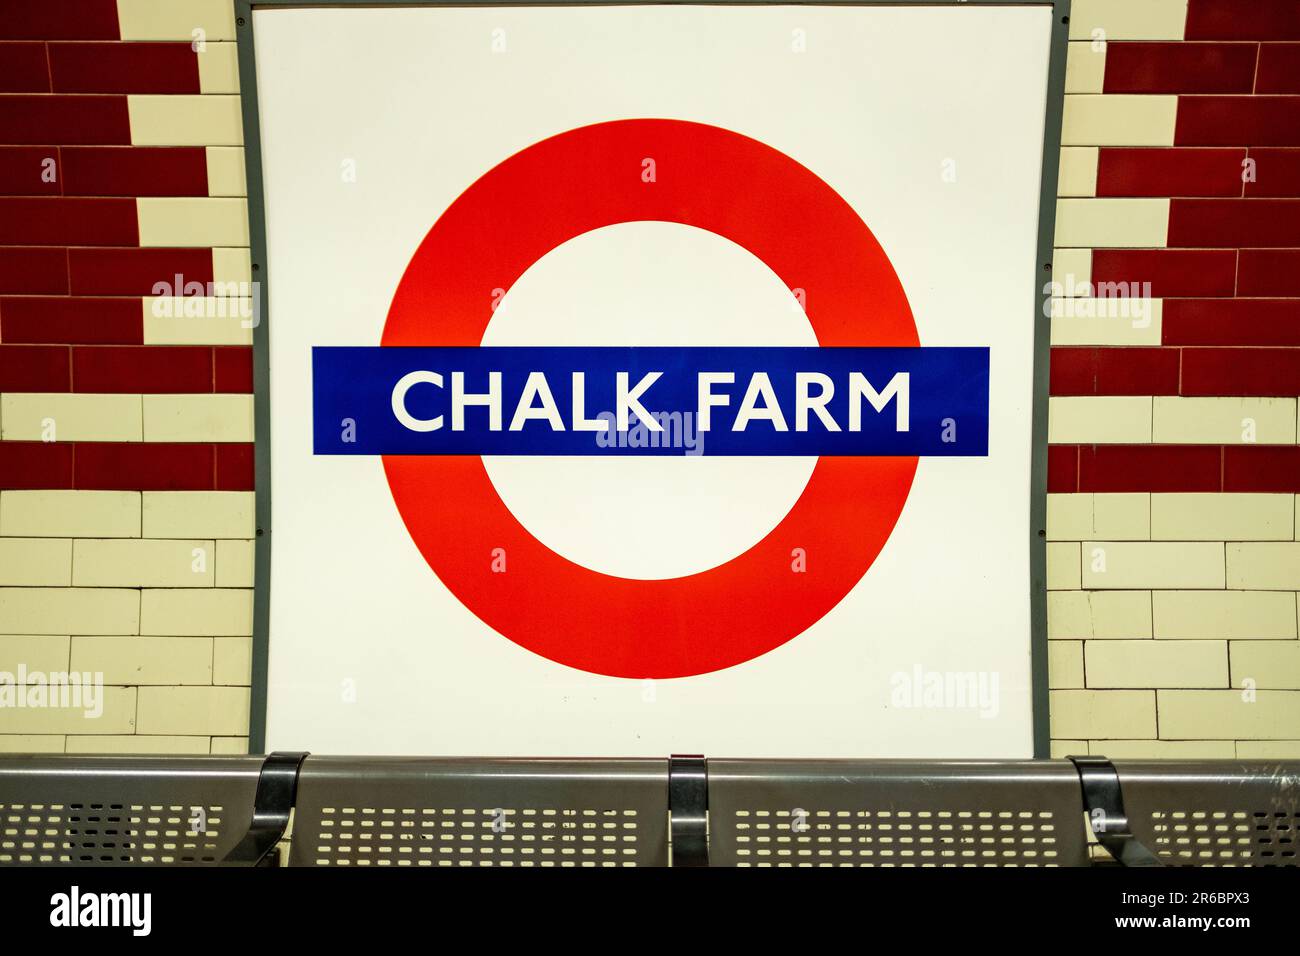 LONDRES - 21 MARS 2023 : Station de métro Chalk Farm, une station de la ligne Nord dans le quartier de Camden, au nord de Londres Banque D'Images